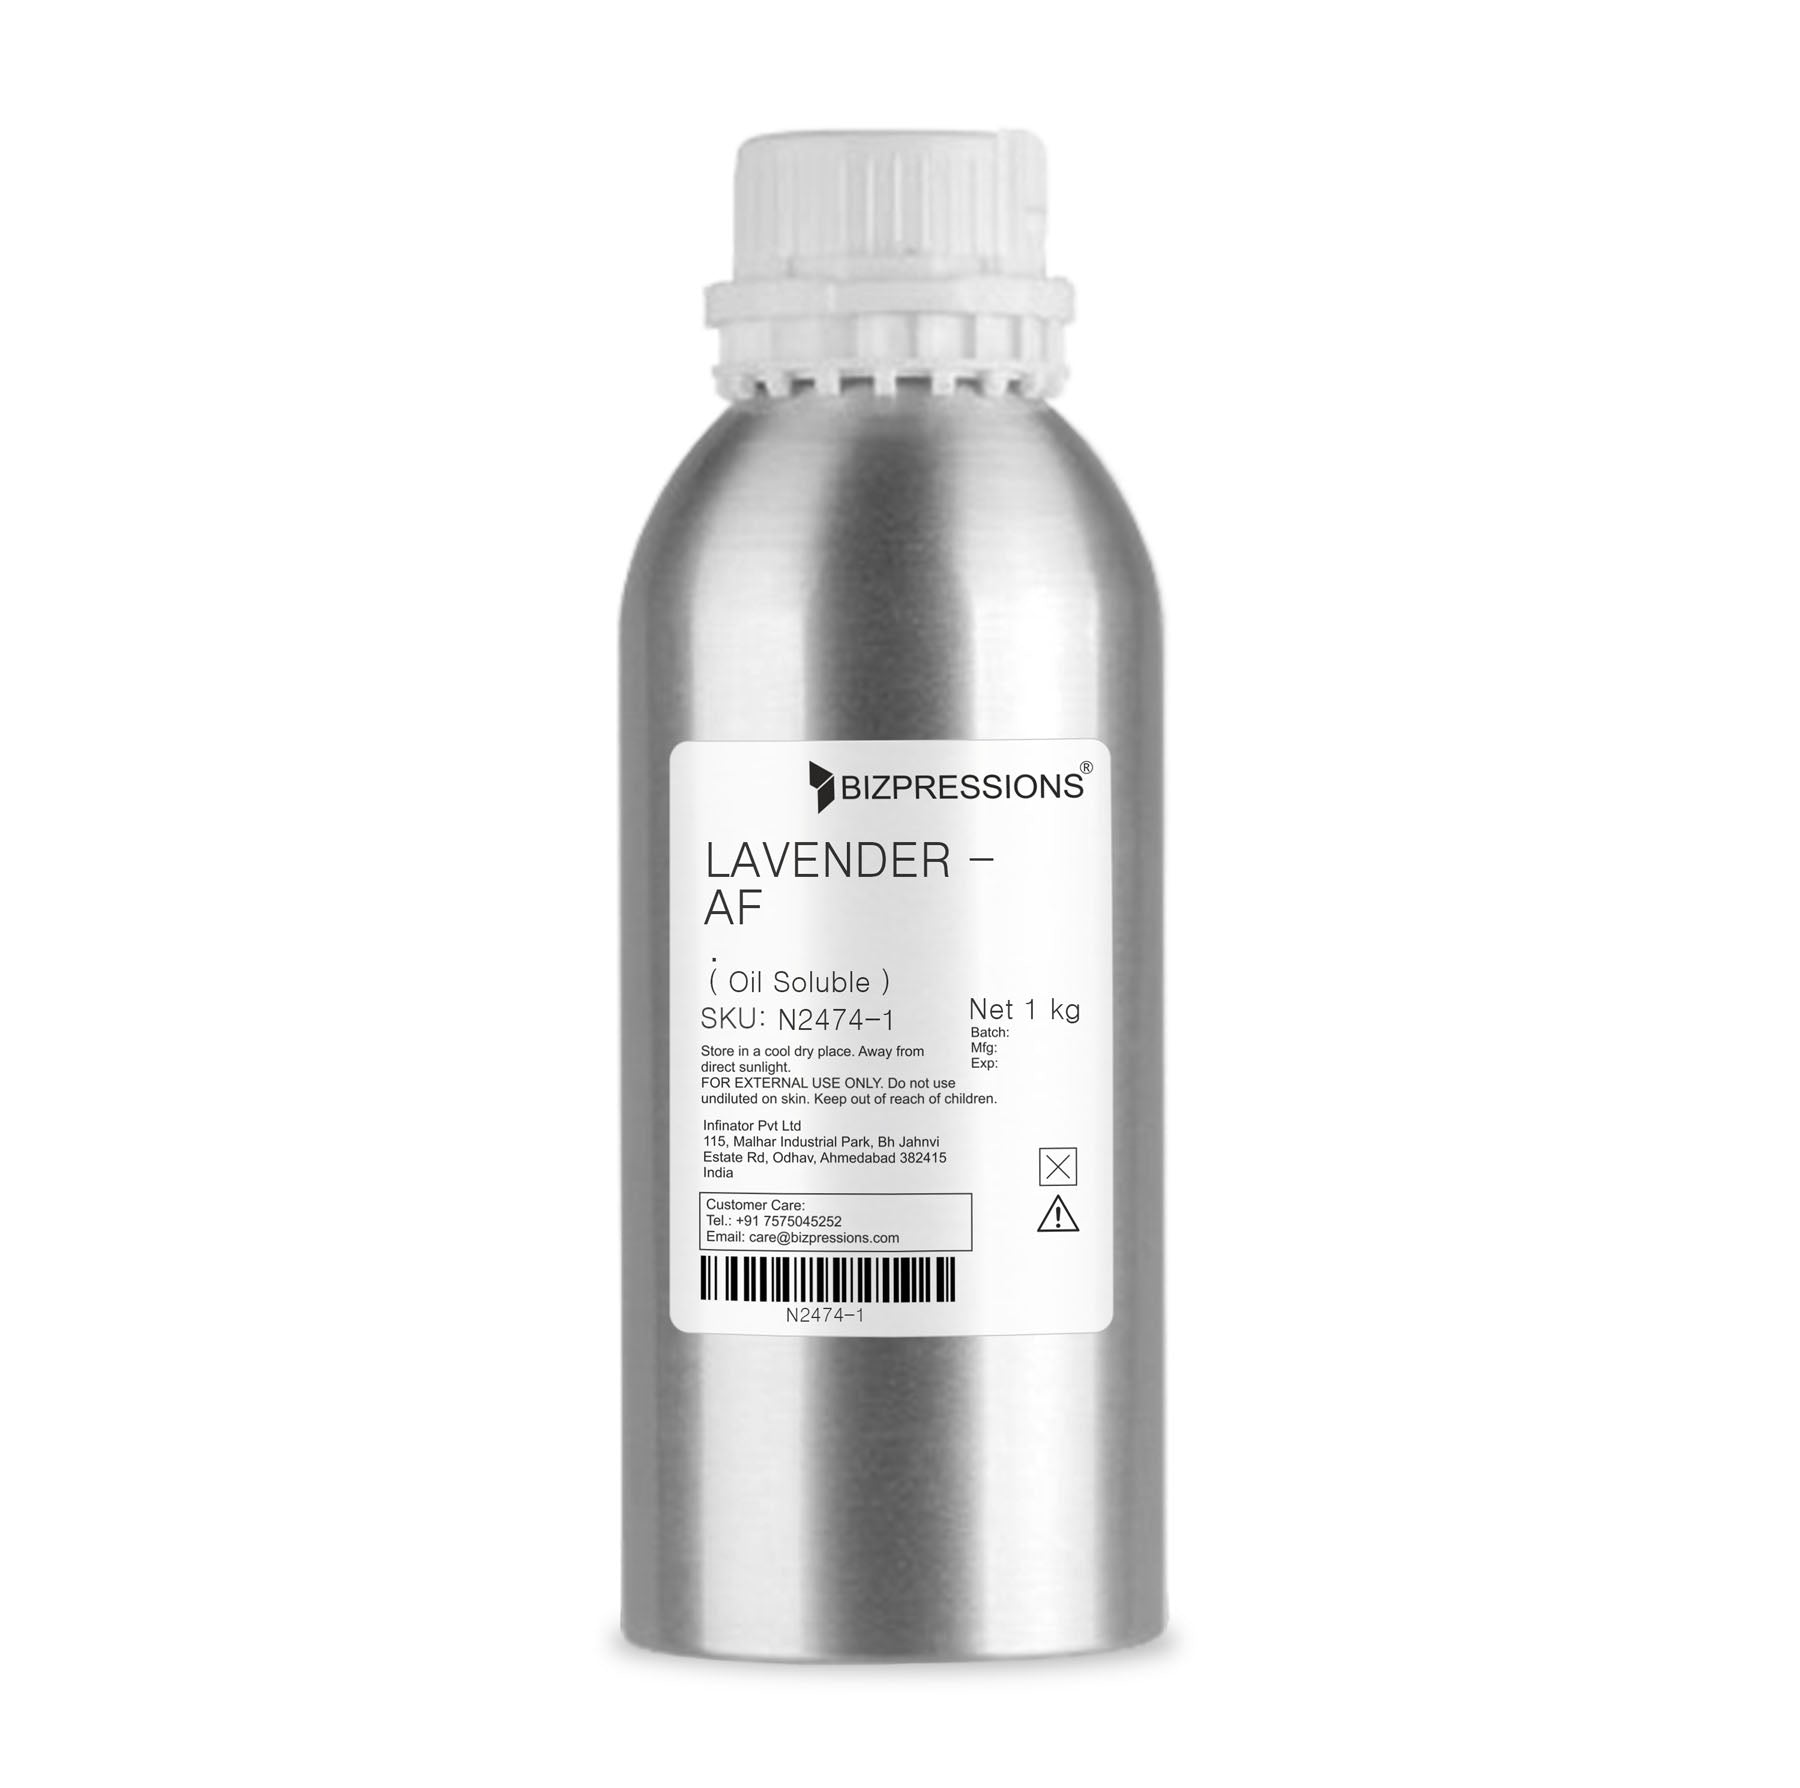 LAVENDER - AF - Fragrance ( Oil Soluble ) - 1 kg